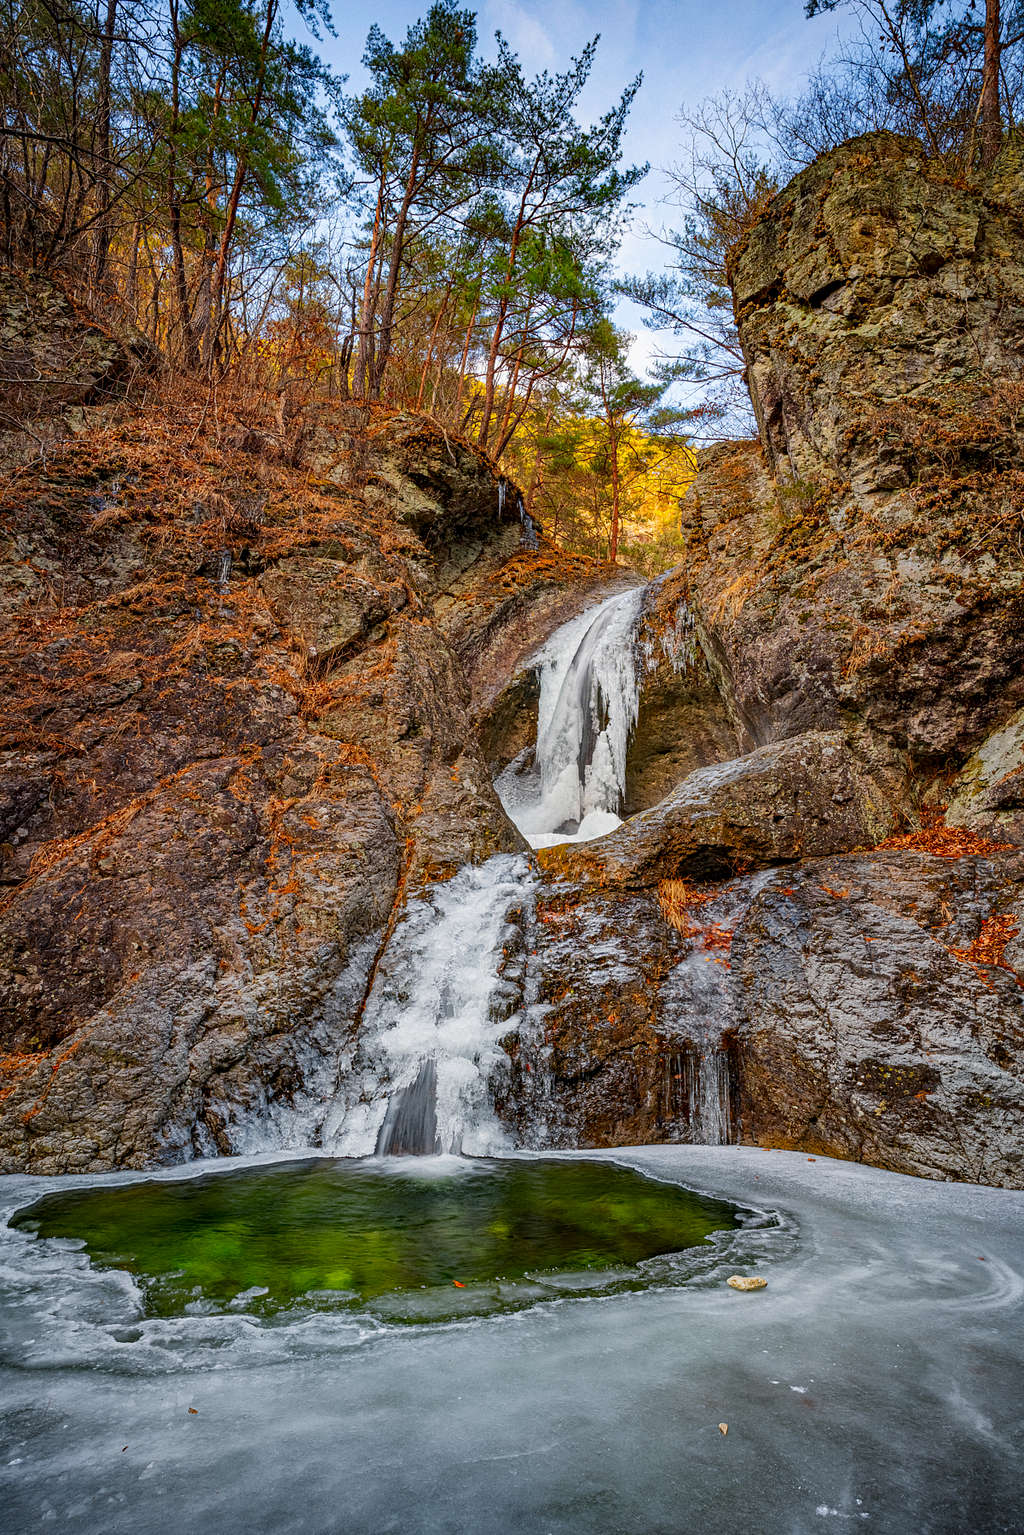 Beautiful waterfalls in Korea's Juwangsan National Park-2